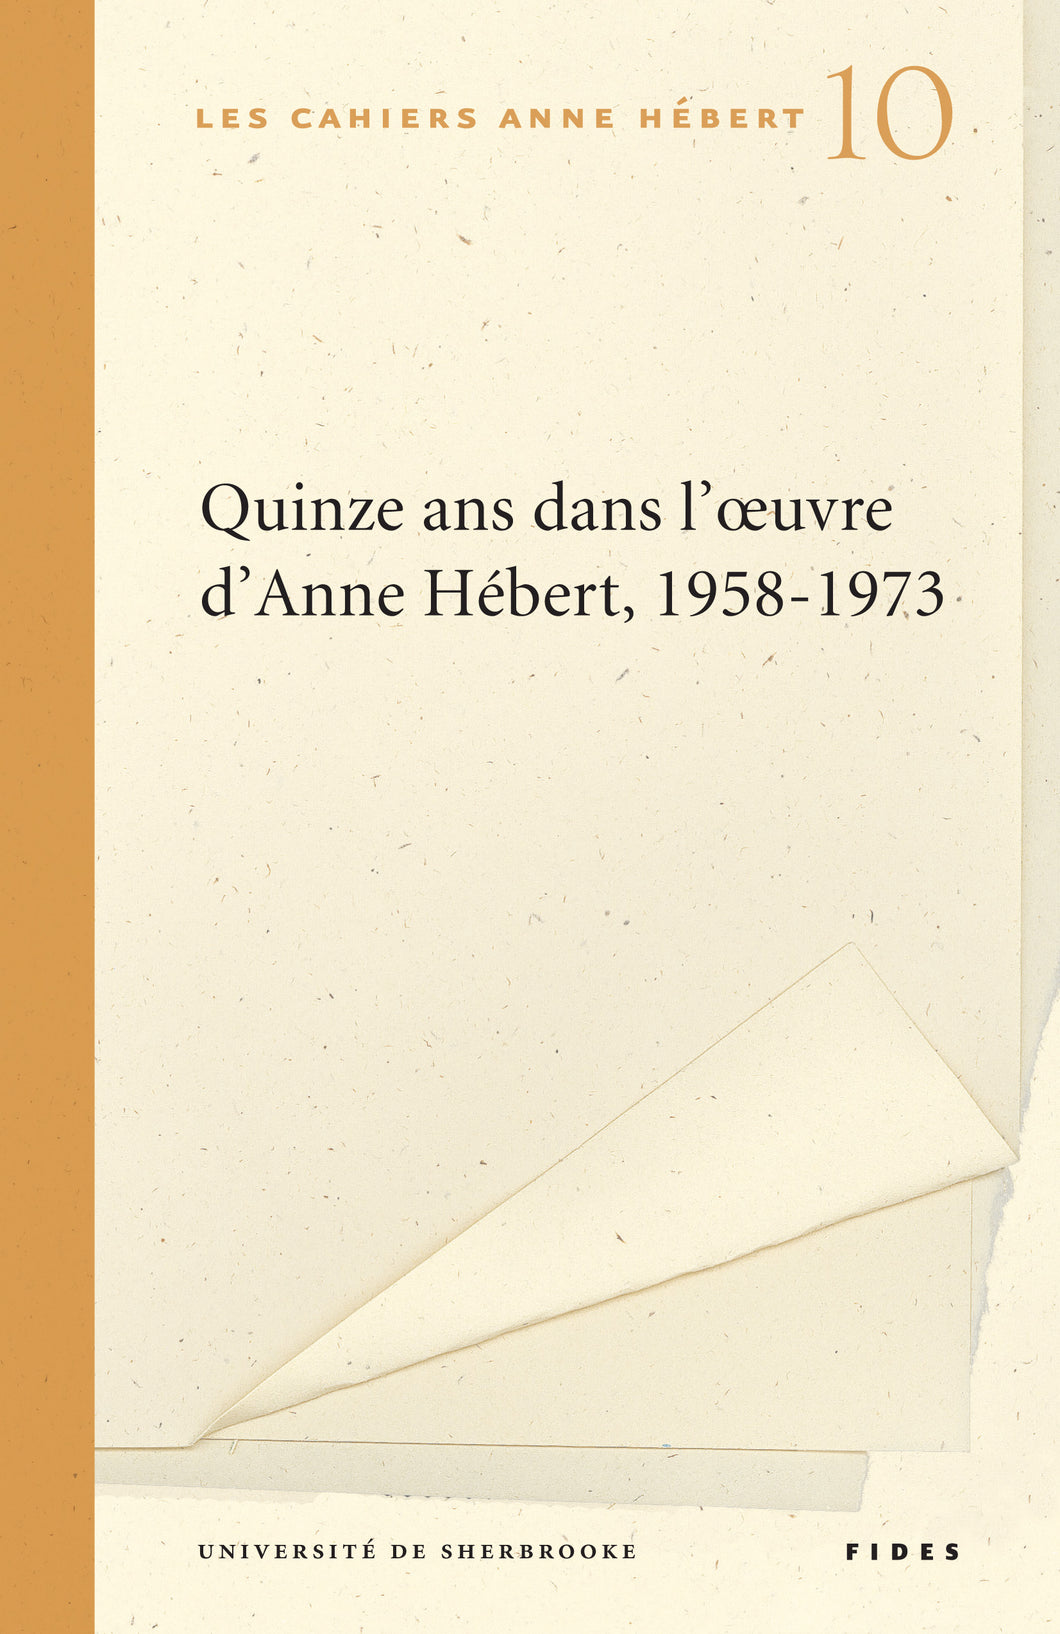 Quinze ans dans l'oeuvre d'Anne Hébert, 1958-1973